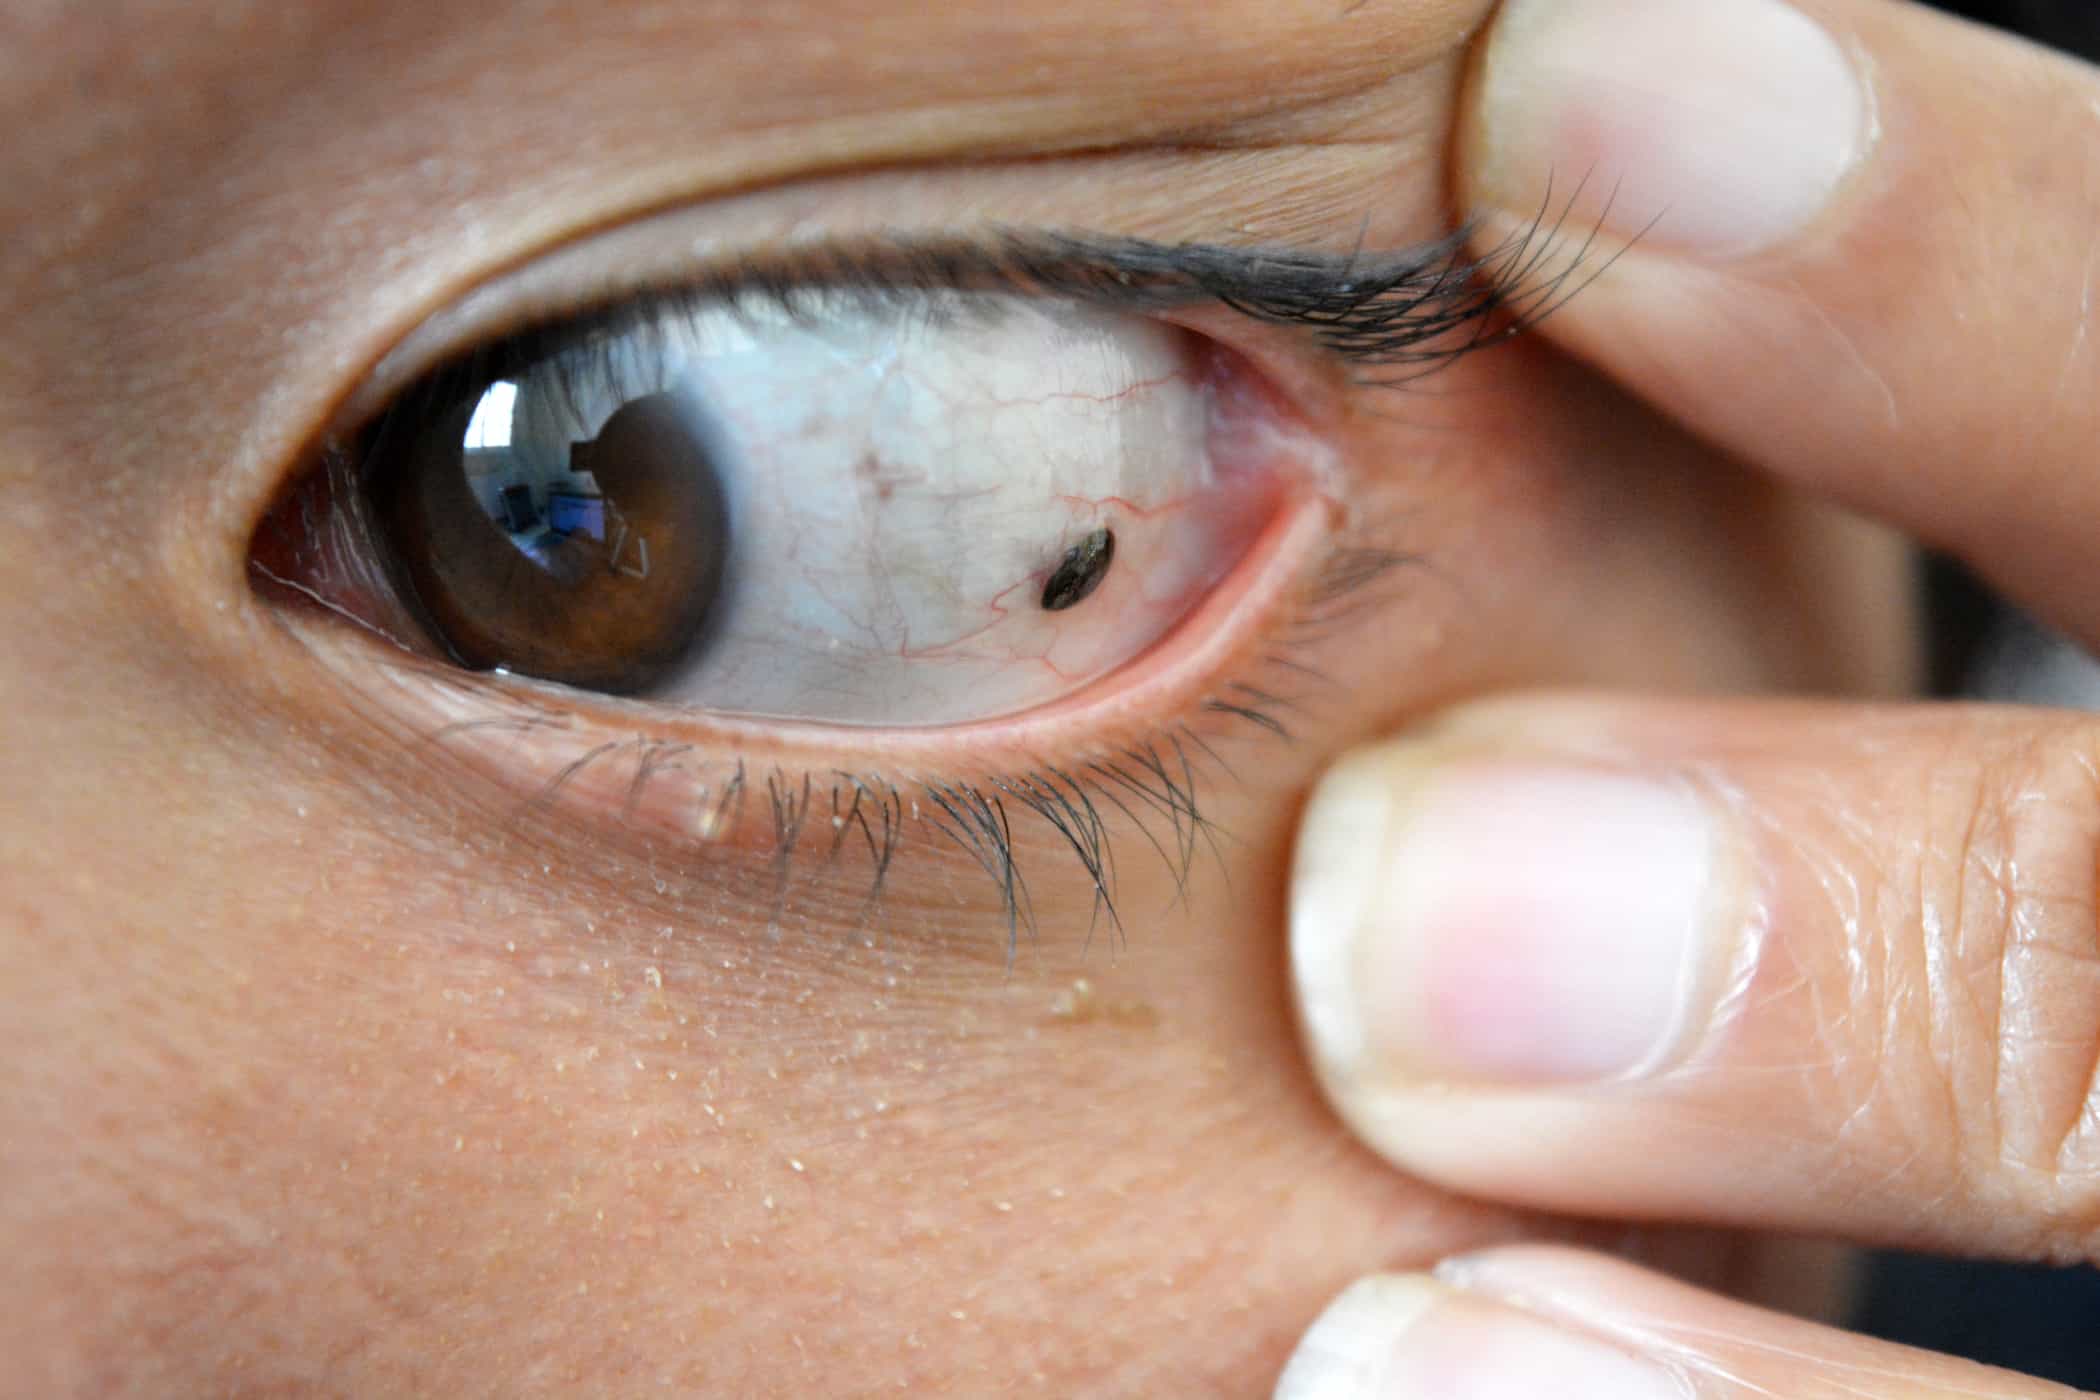 לא רק תוקף את העור, סרטן מלנומה יכול להופיע גם בעיניים